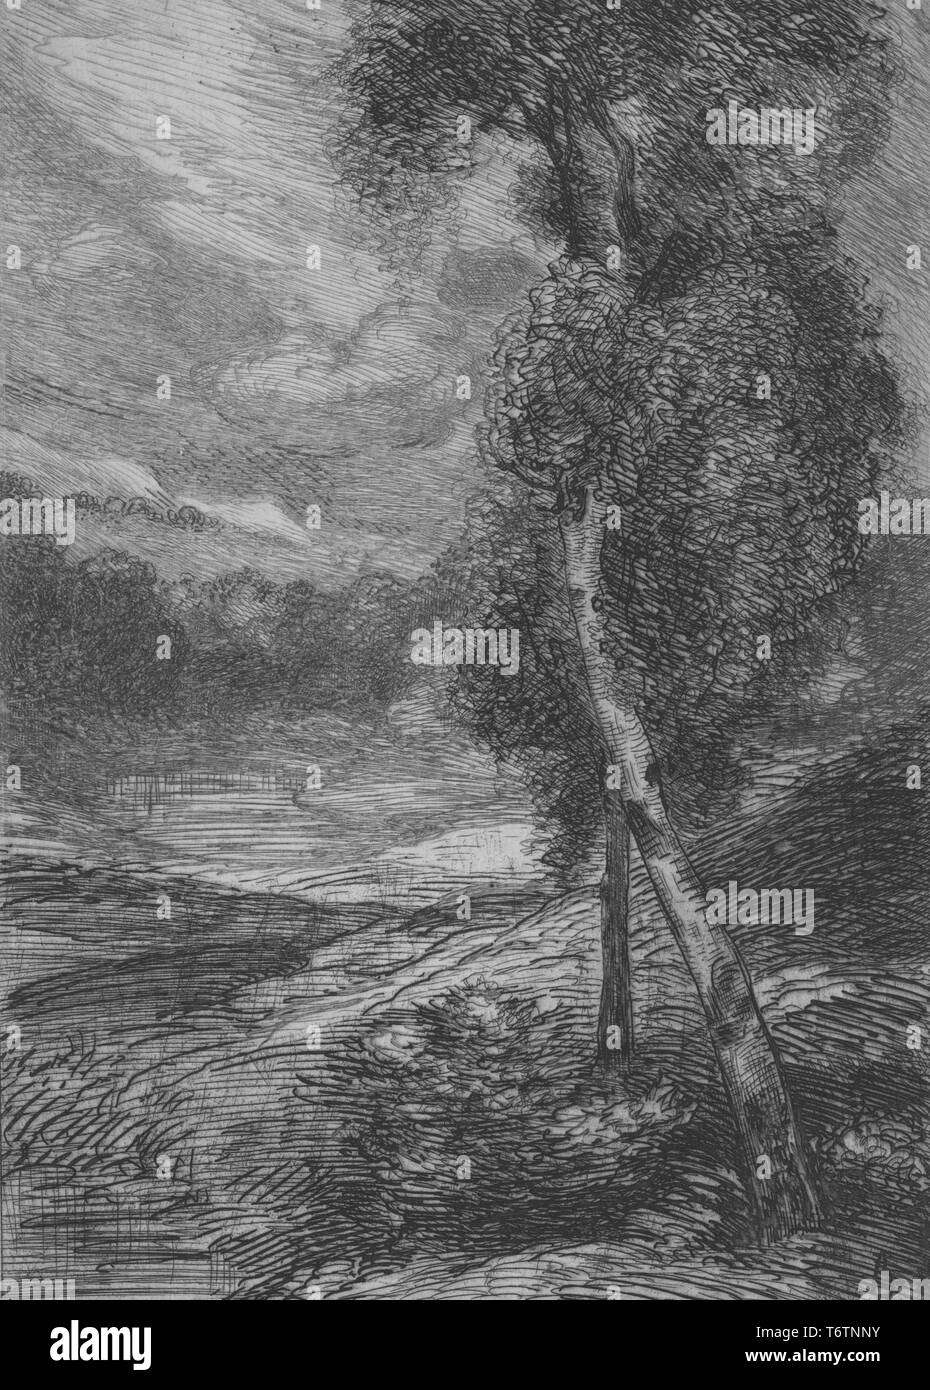 Gravure en noir et blanc, représentant un bouleau avec un tronc courbe à droite au premier plan, et un paysage avec plus d'arbres et visible à l'arrière-plan, intitulé "Un bouleau" (bouleau), numérotés et signés par l'illustrateur Félix Bracquemond, 1867. À partir de la Bibliothèque publique de New York. () Banque D'Images